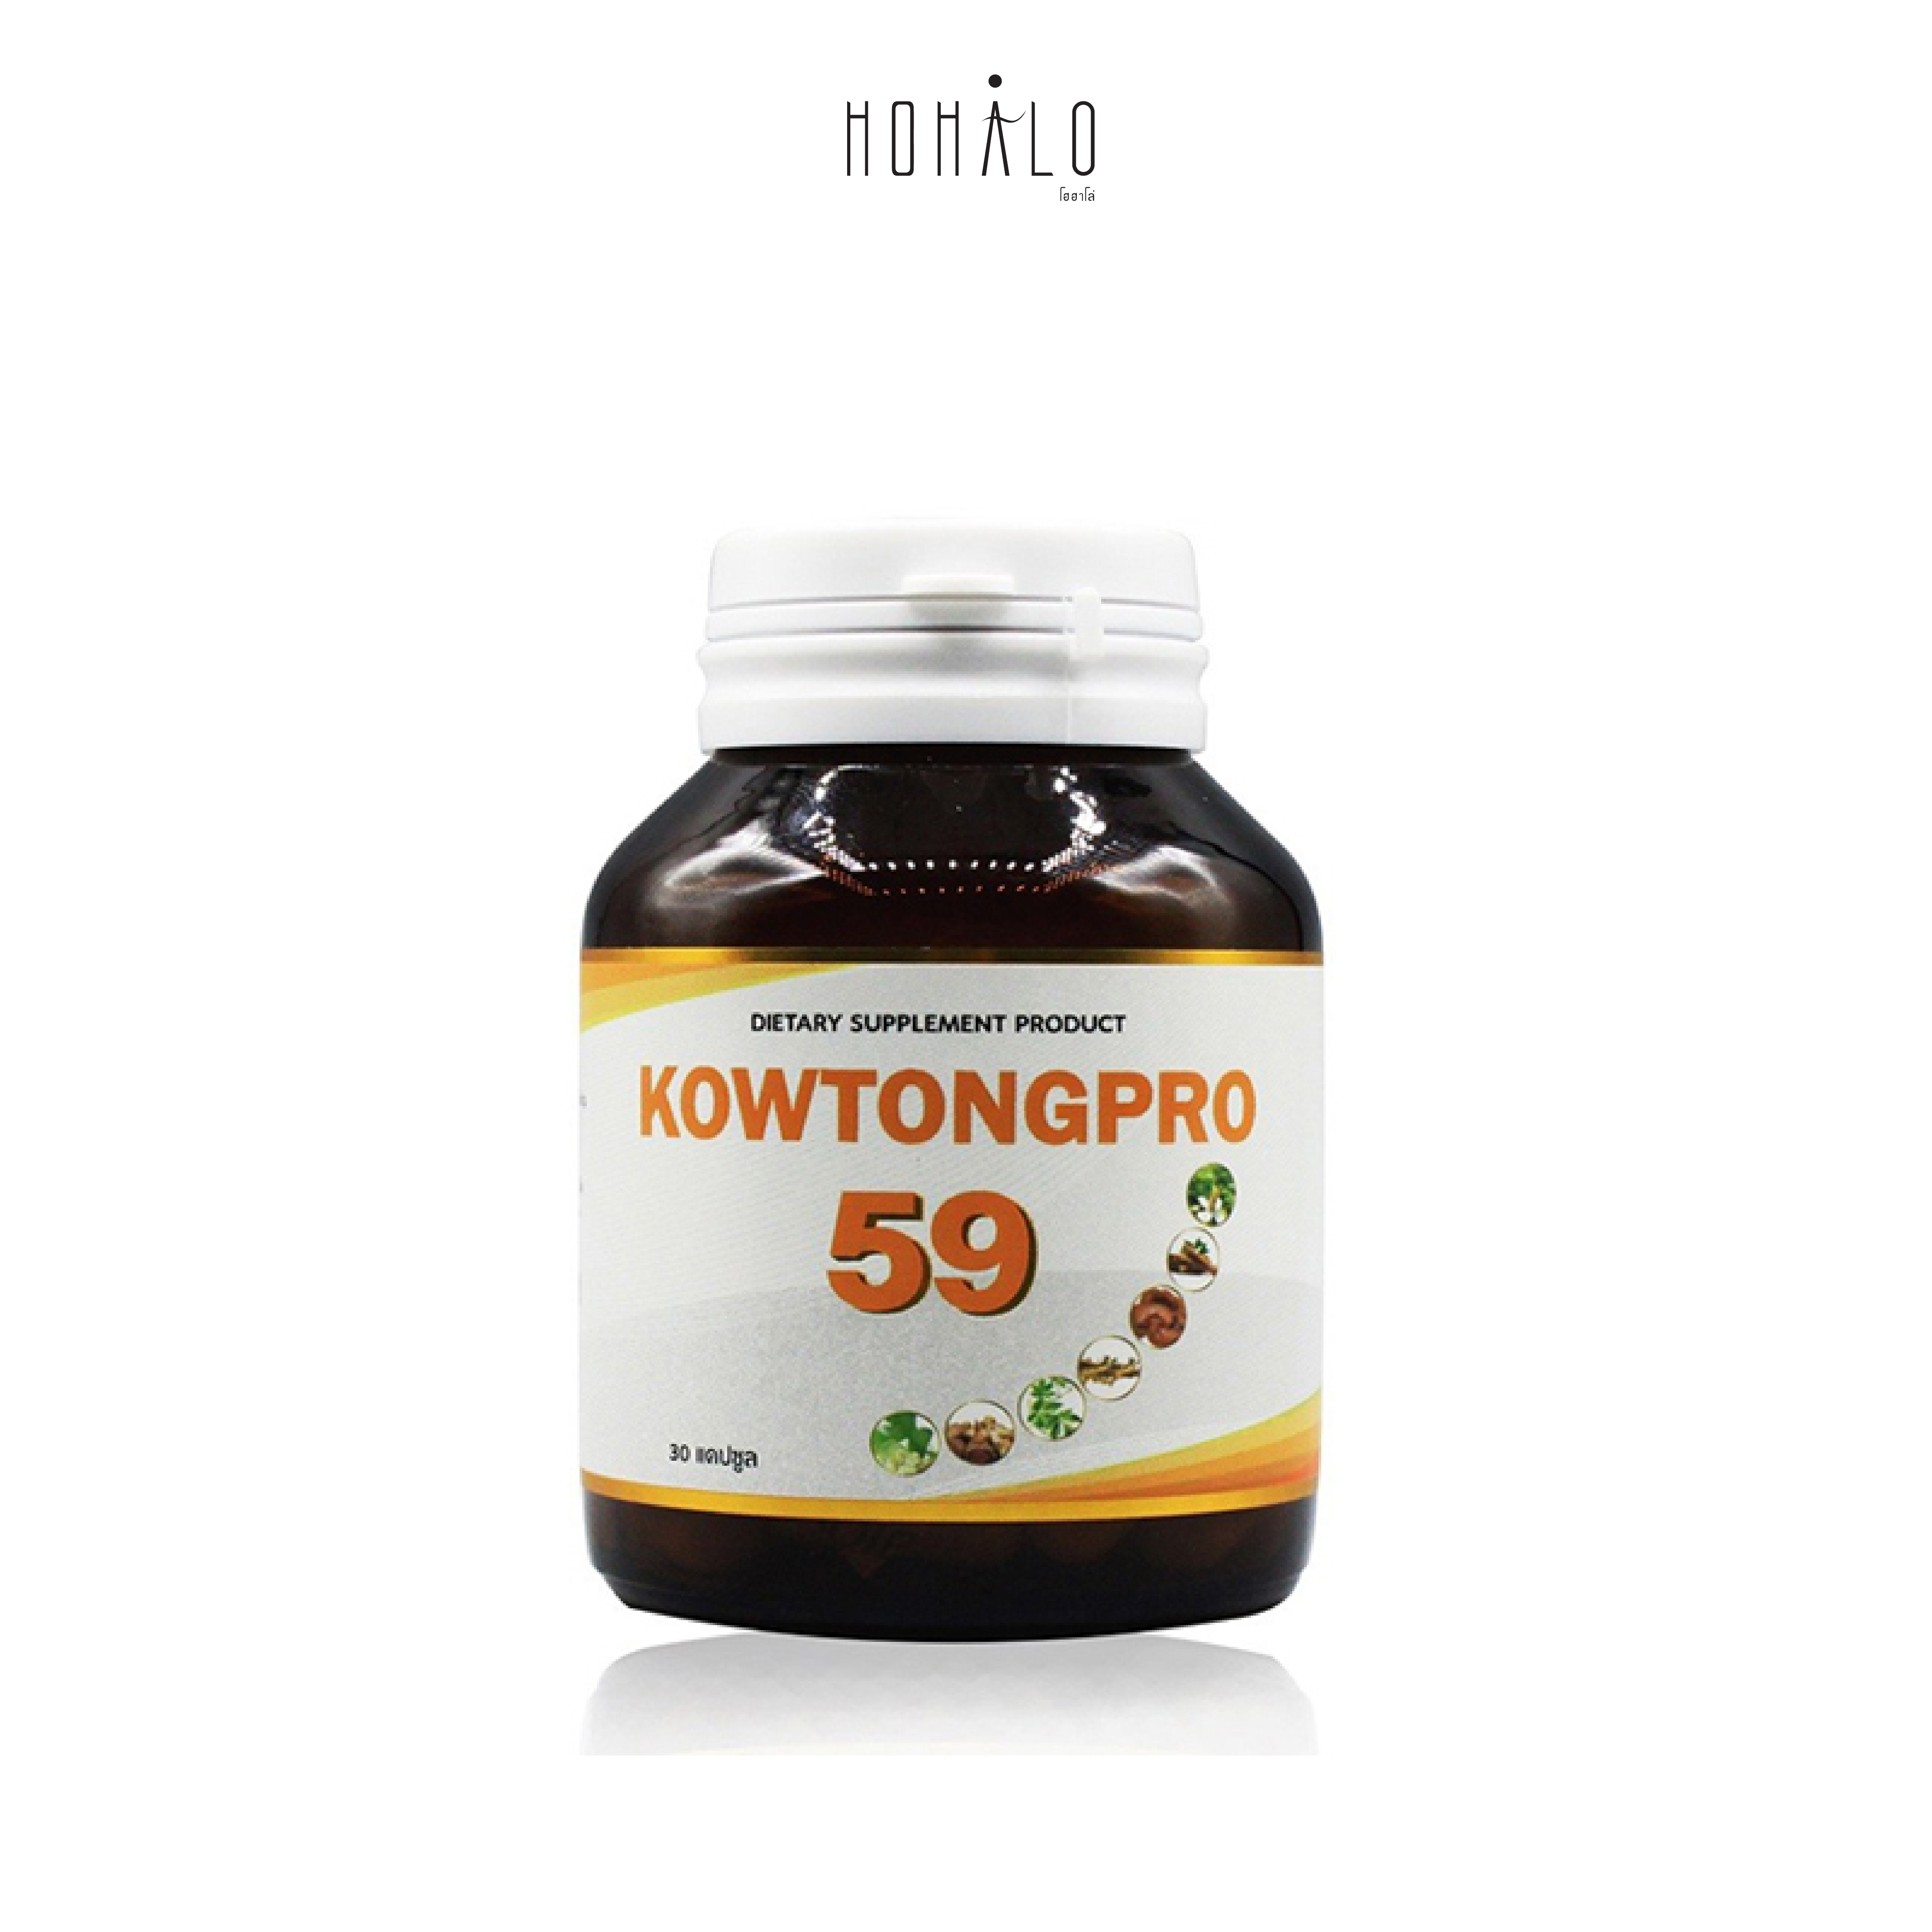 คาวตองโปร 59 (Kowtongpro 59)ผลิตภัณฑ์เสริมอาหาร  30 แคปซูล/กระปุก